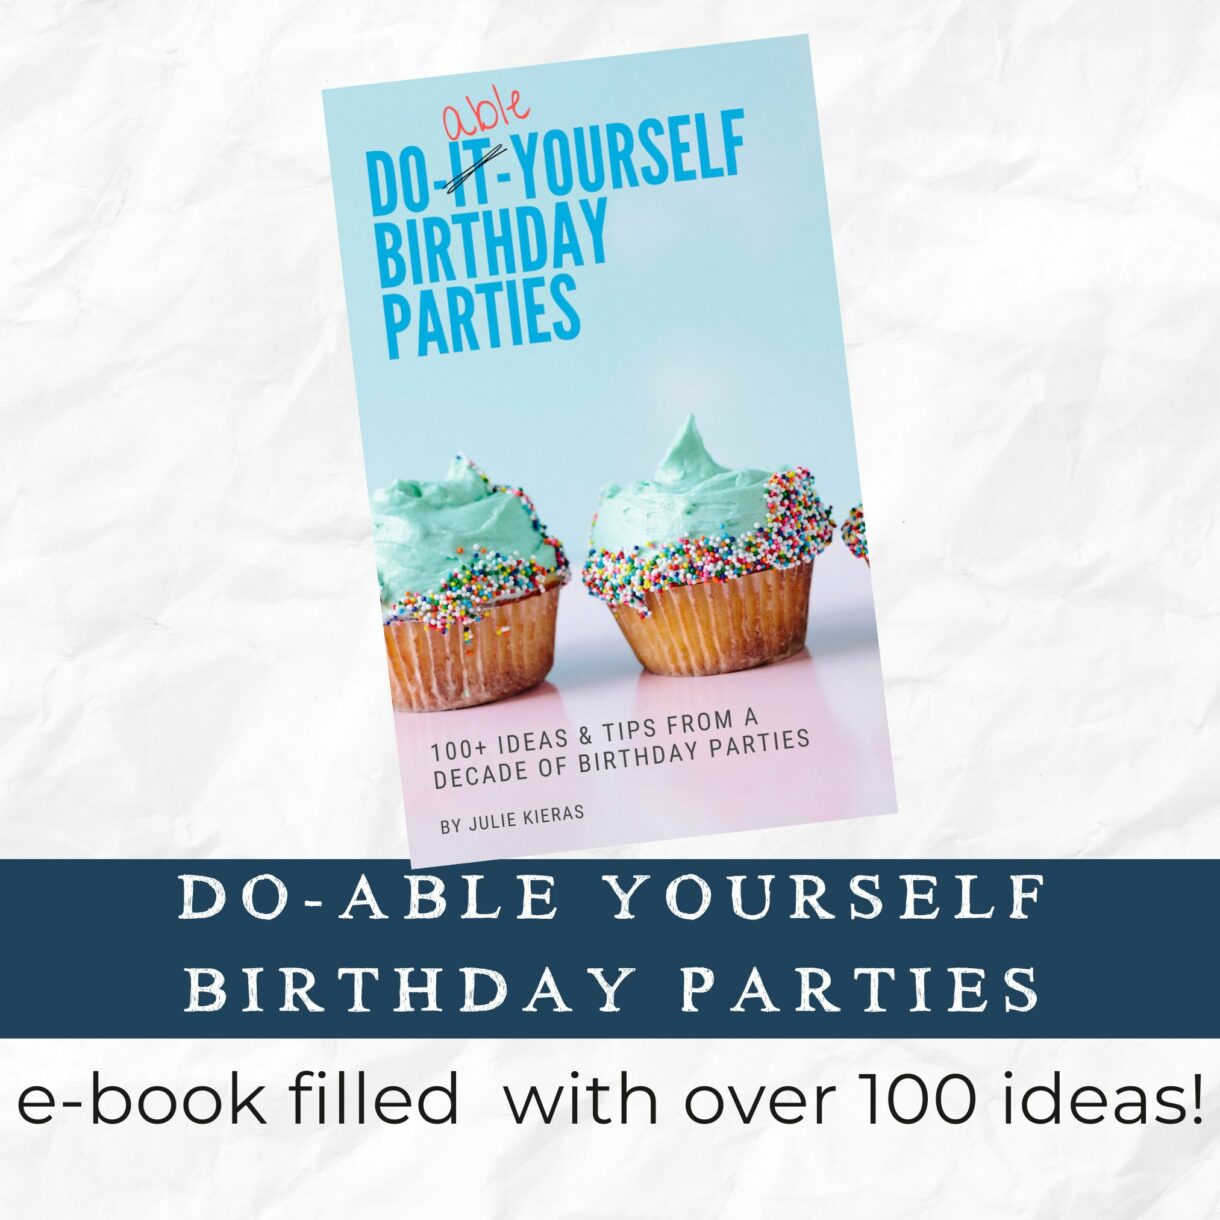 Birthday Party Ebook Shop Promo - Pelavida - Shop For Life